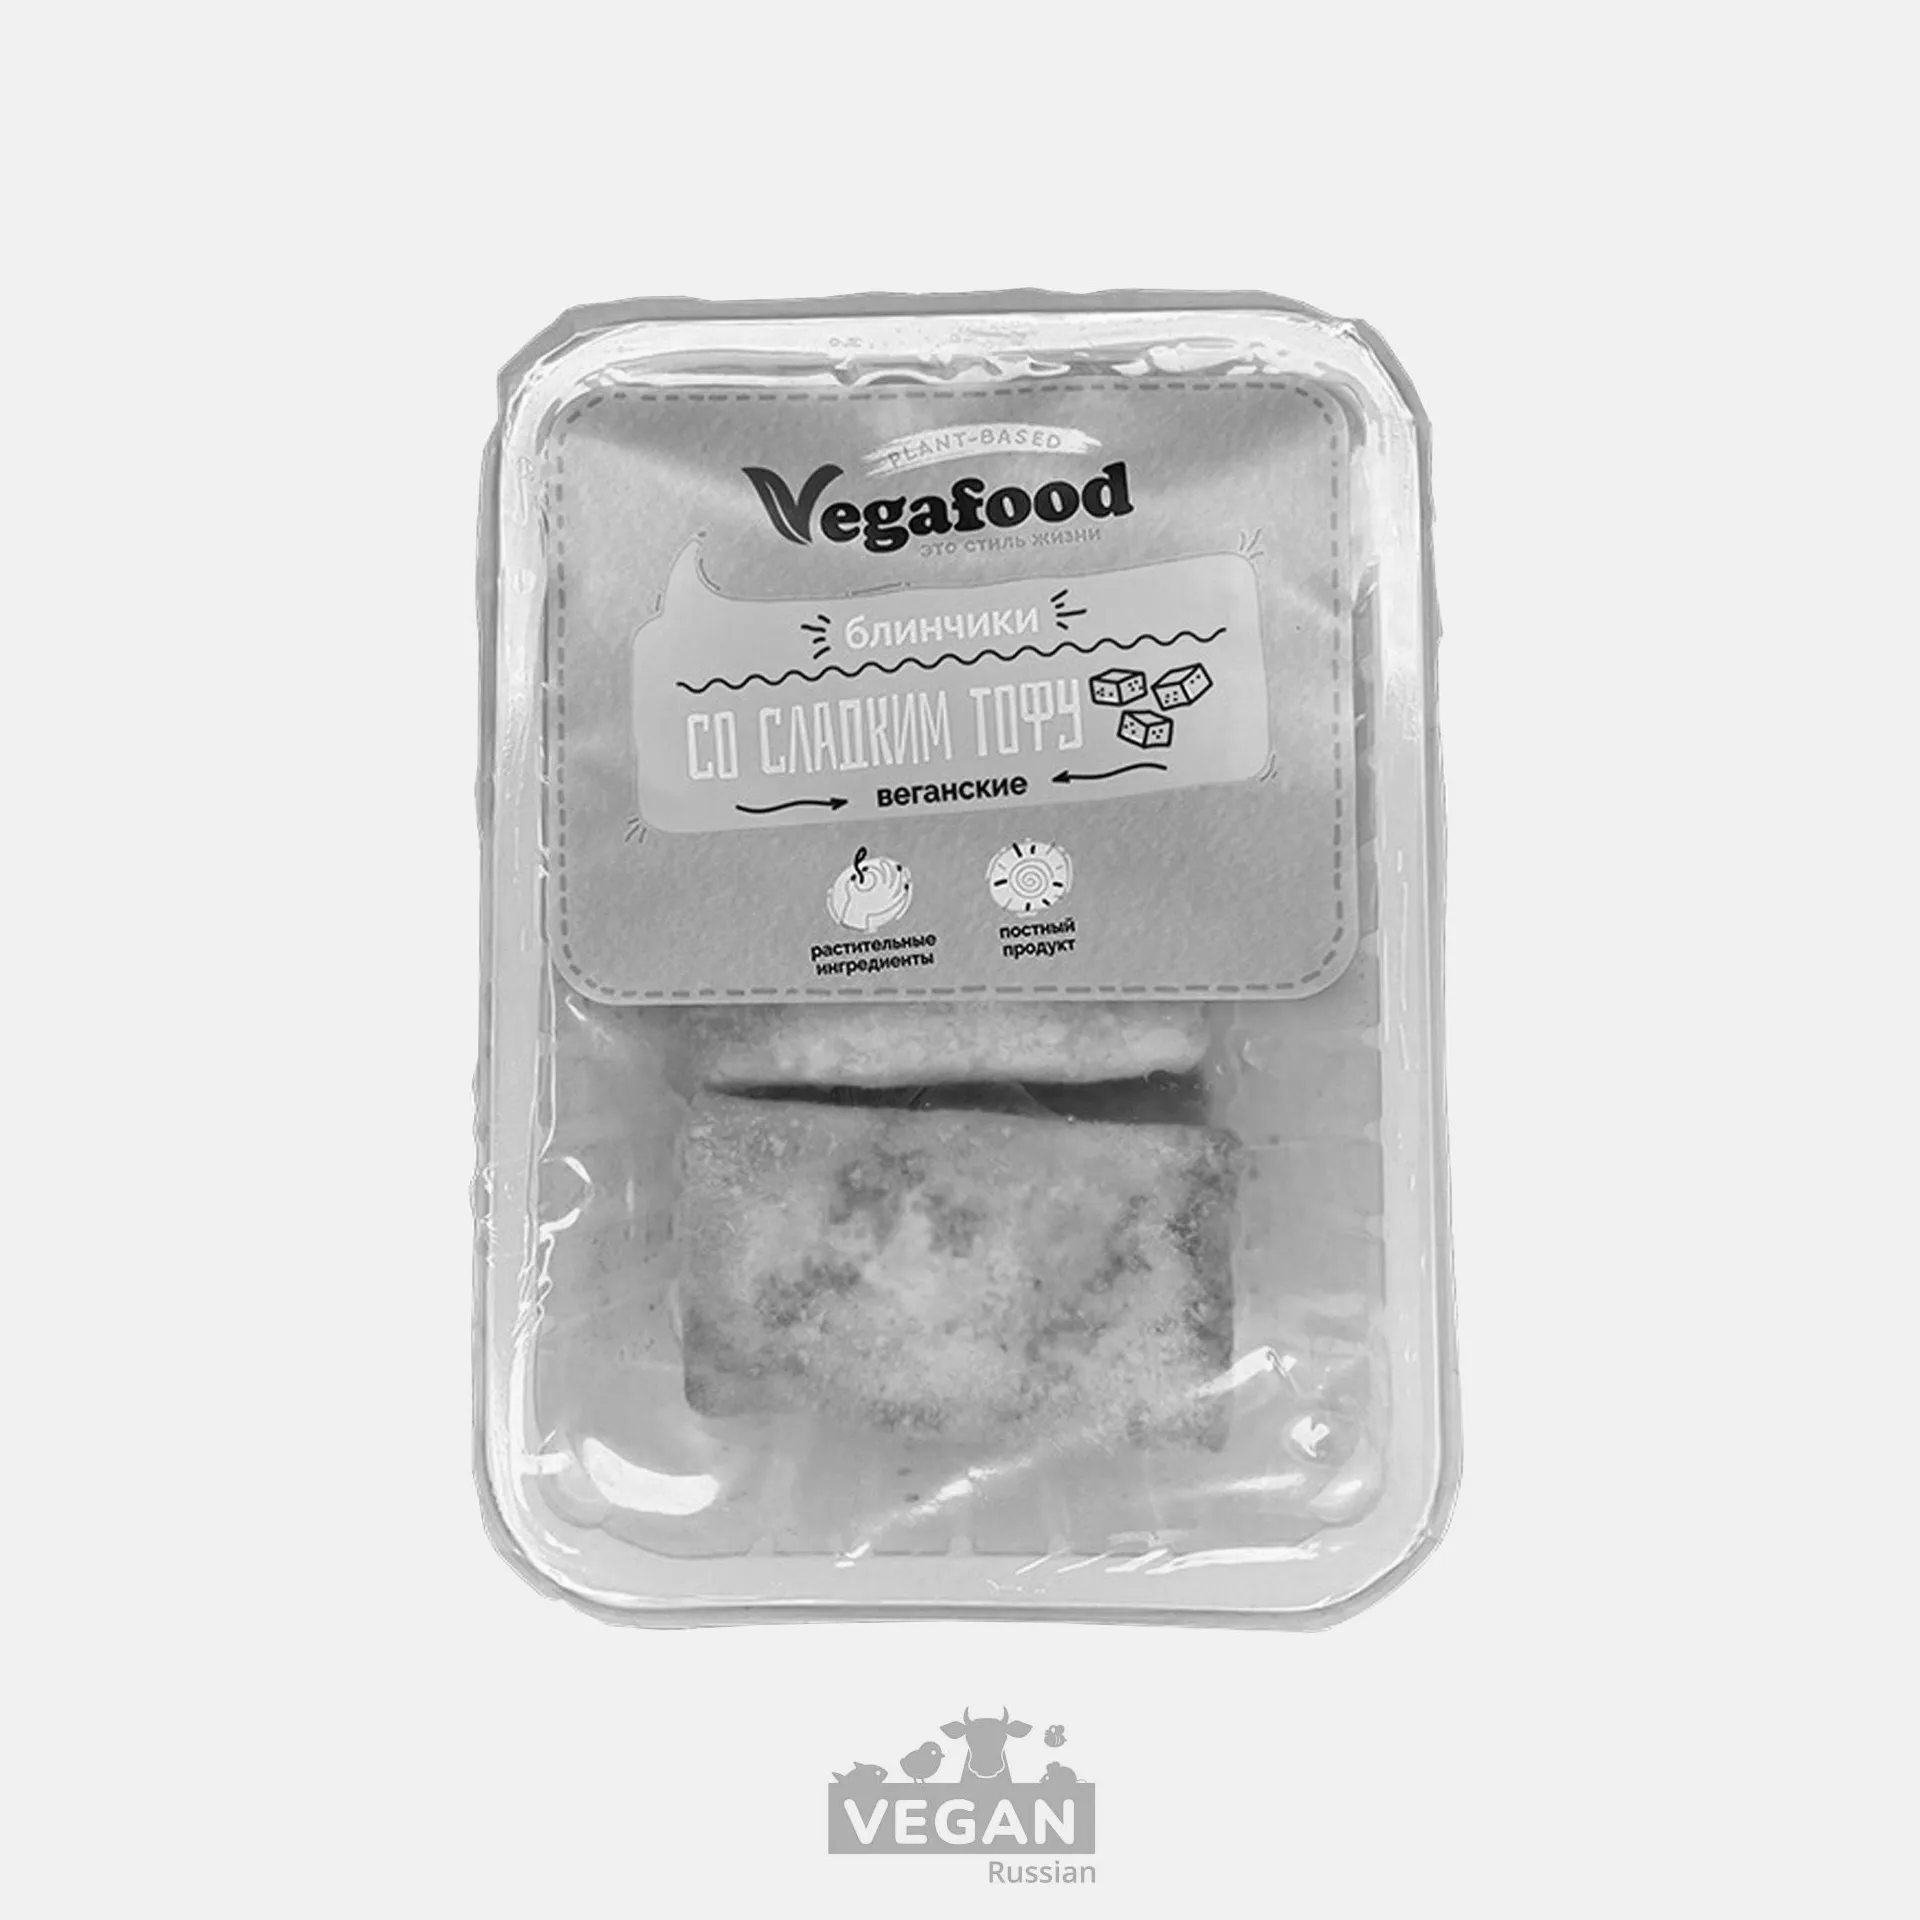 Архив: Блинчики со сладким тофу Vegafood 450 г